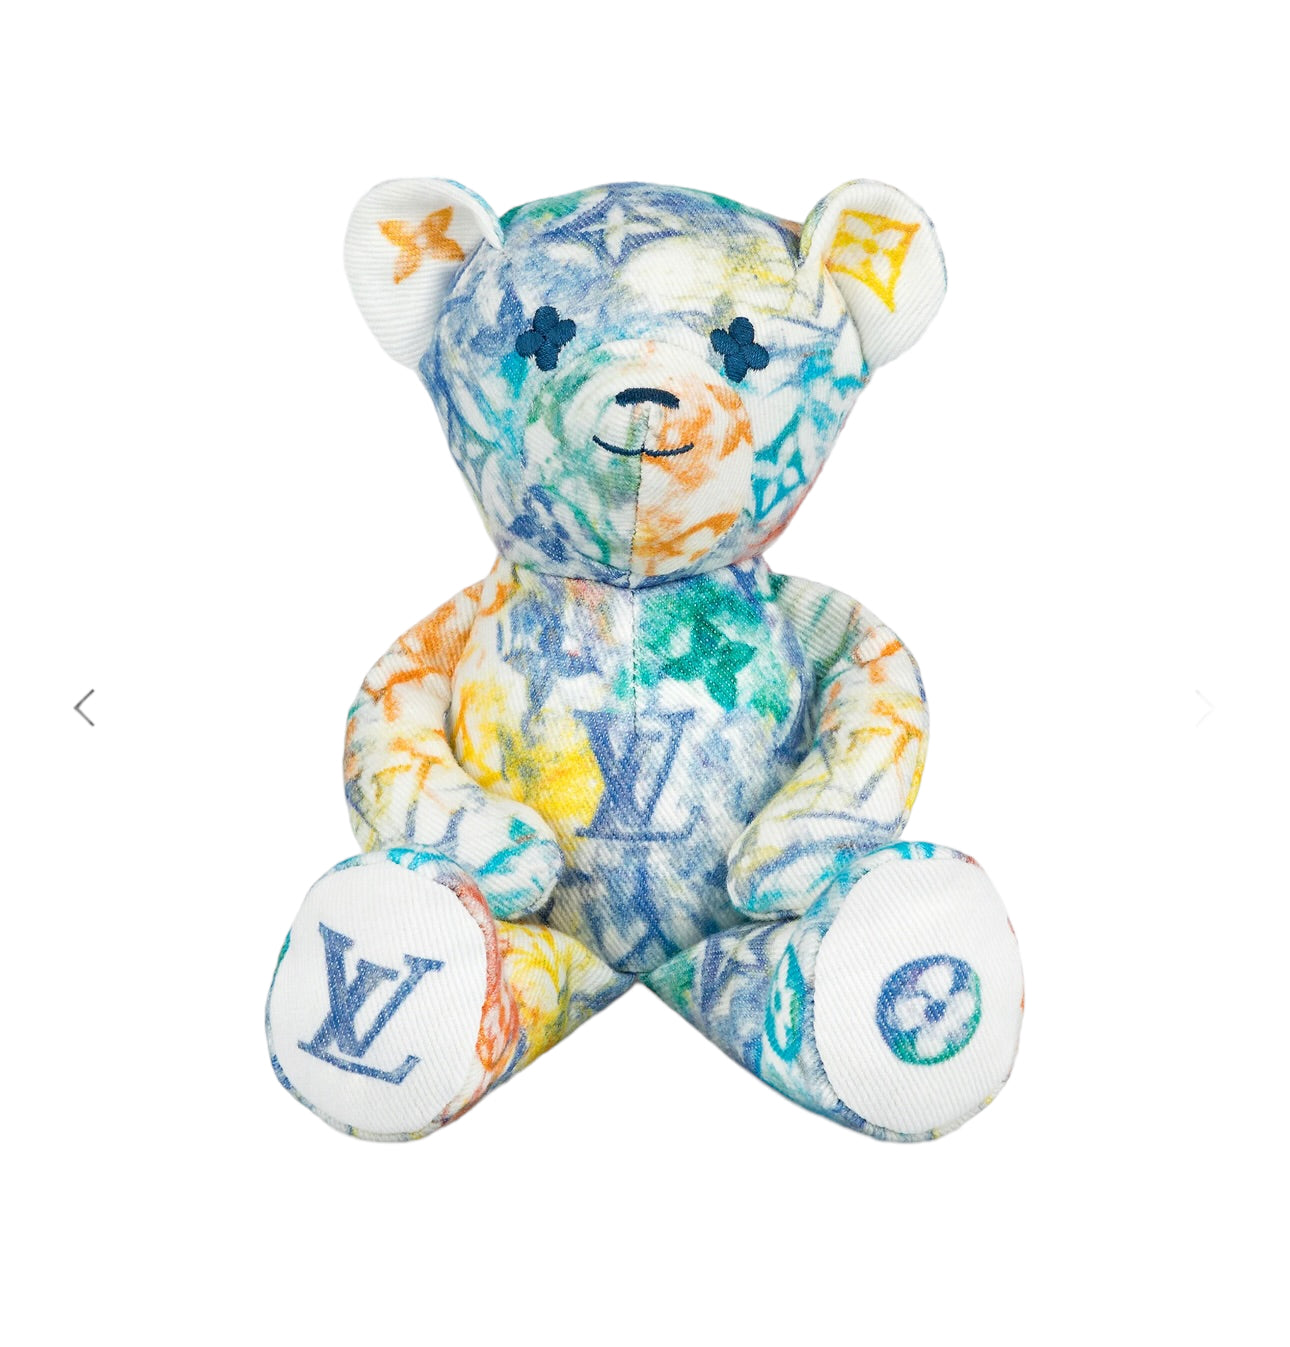 Louis Vuitton Teddy Bear – Such A Tavan